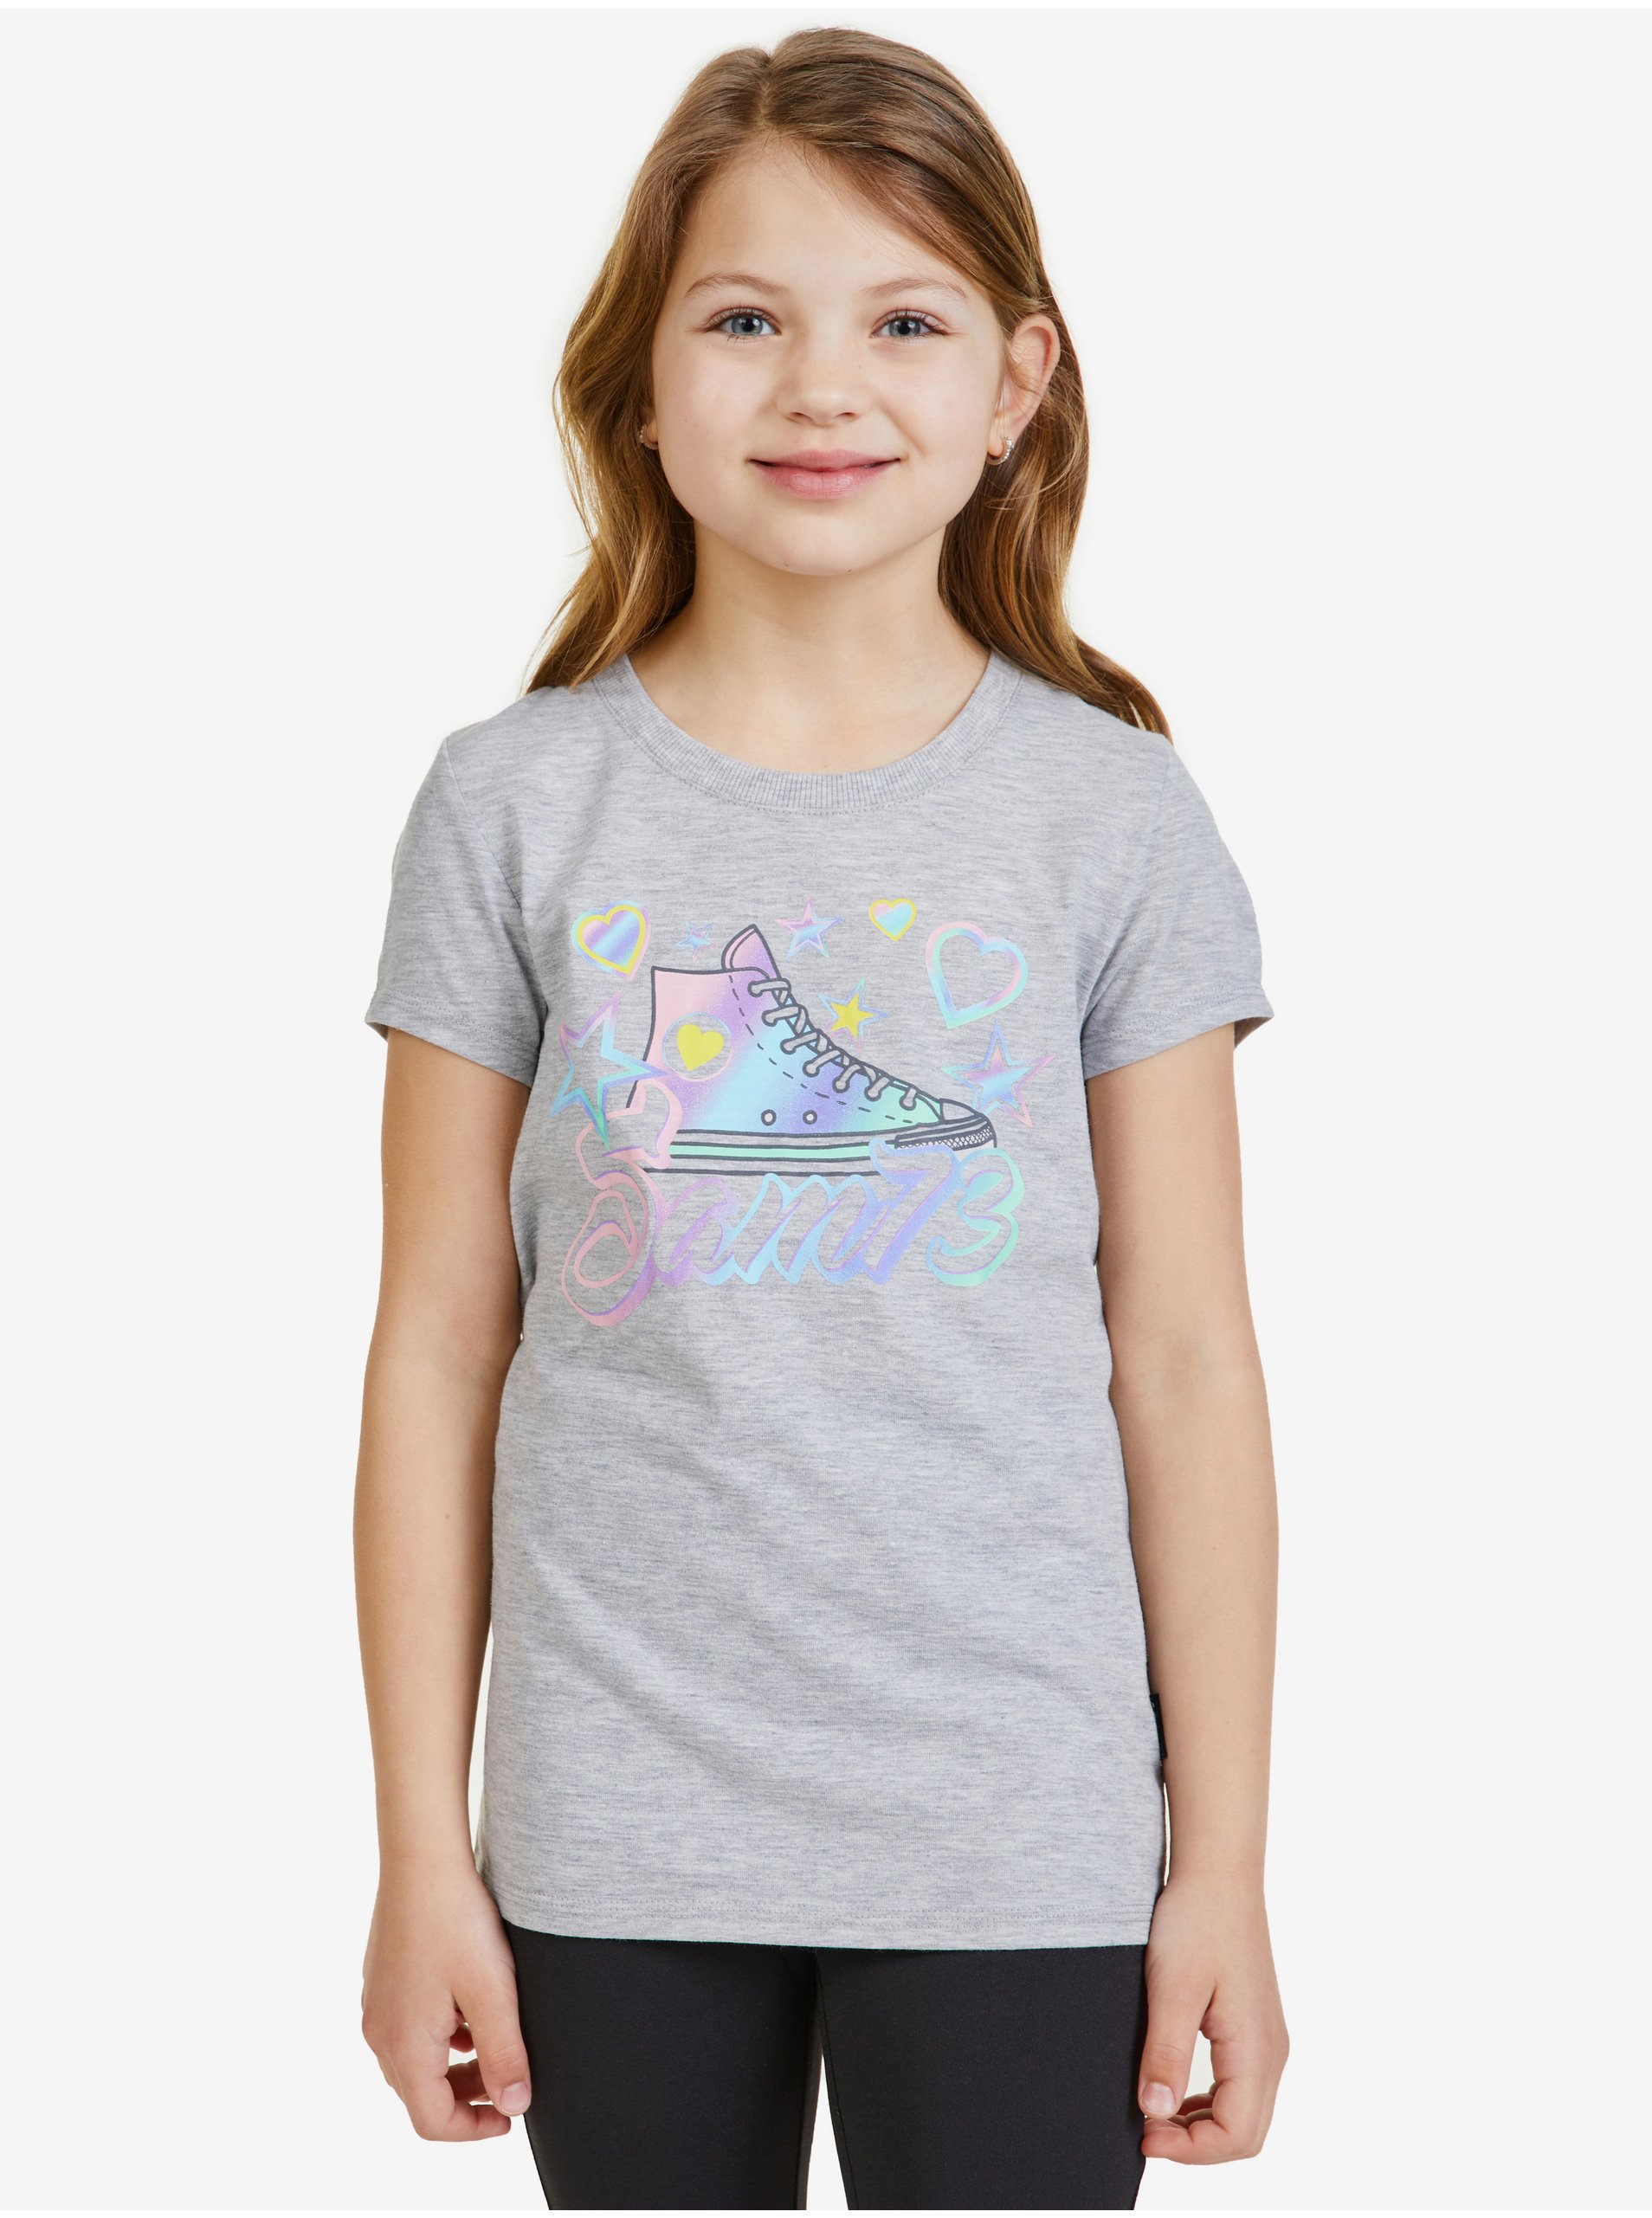 Lacno Svetlošedé dievčenské tričko SAM 73 Ursula